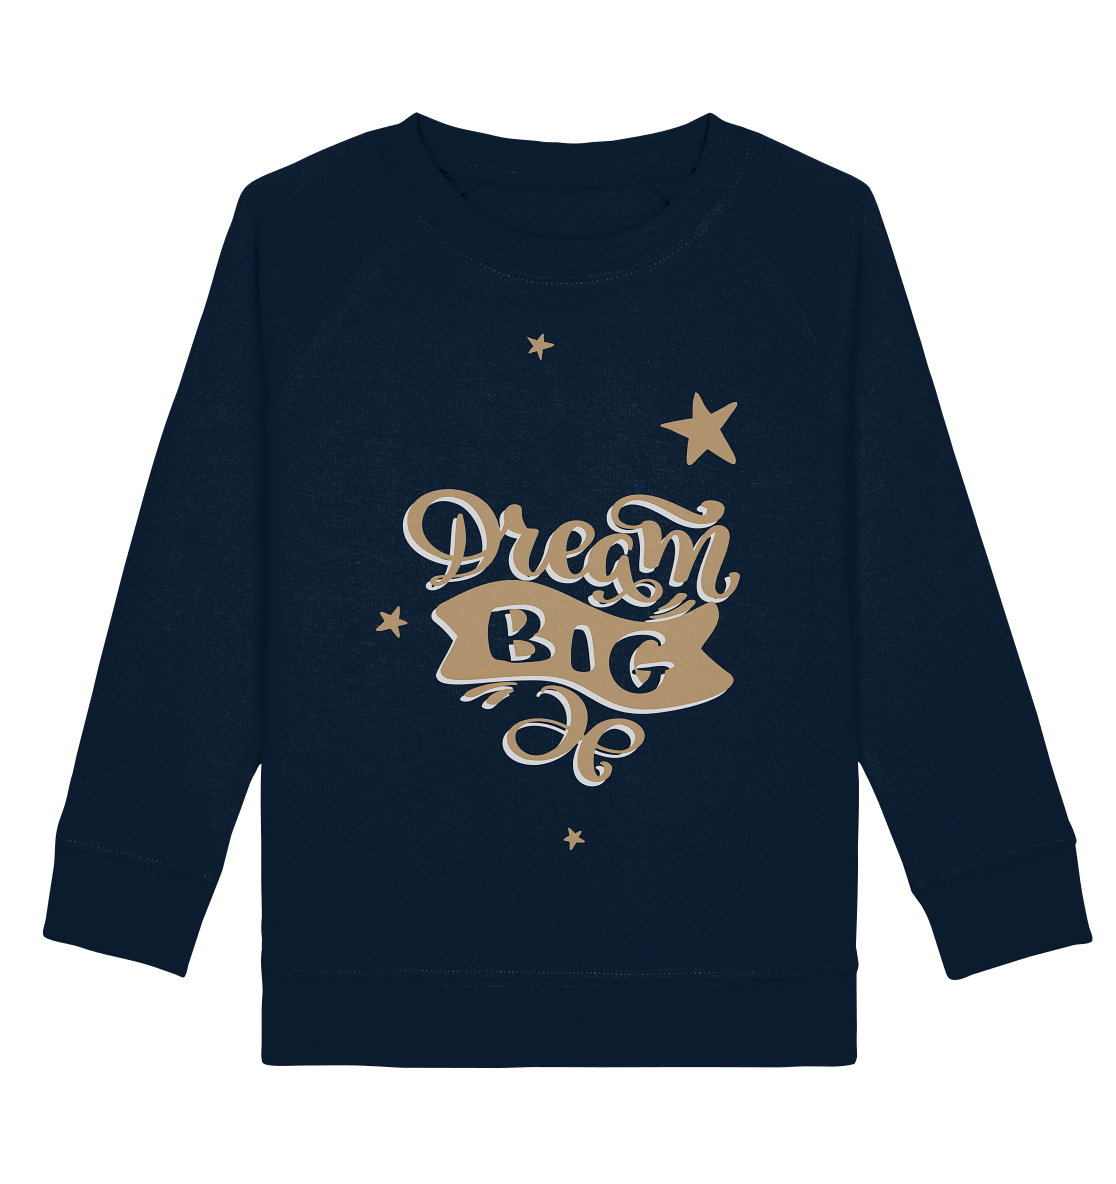 Dream Big Sweatshirt für mädchen in navy blau